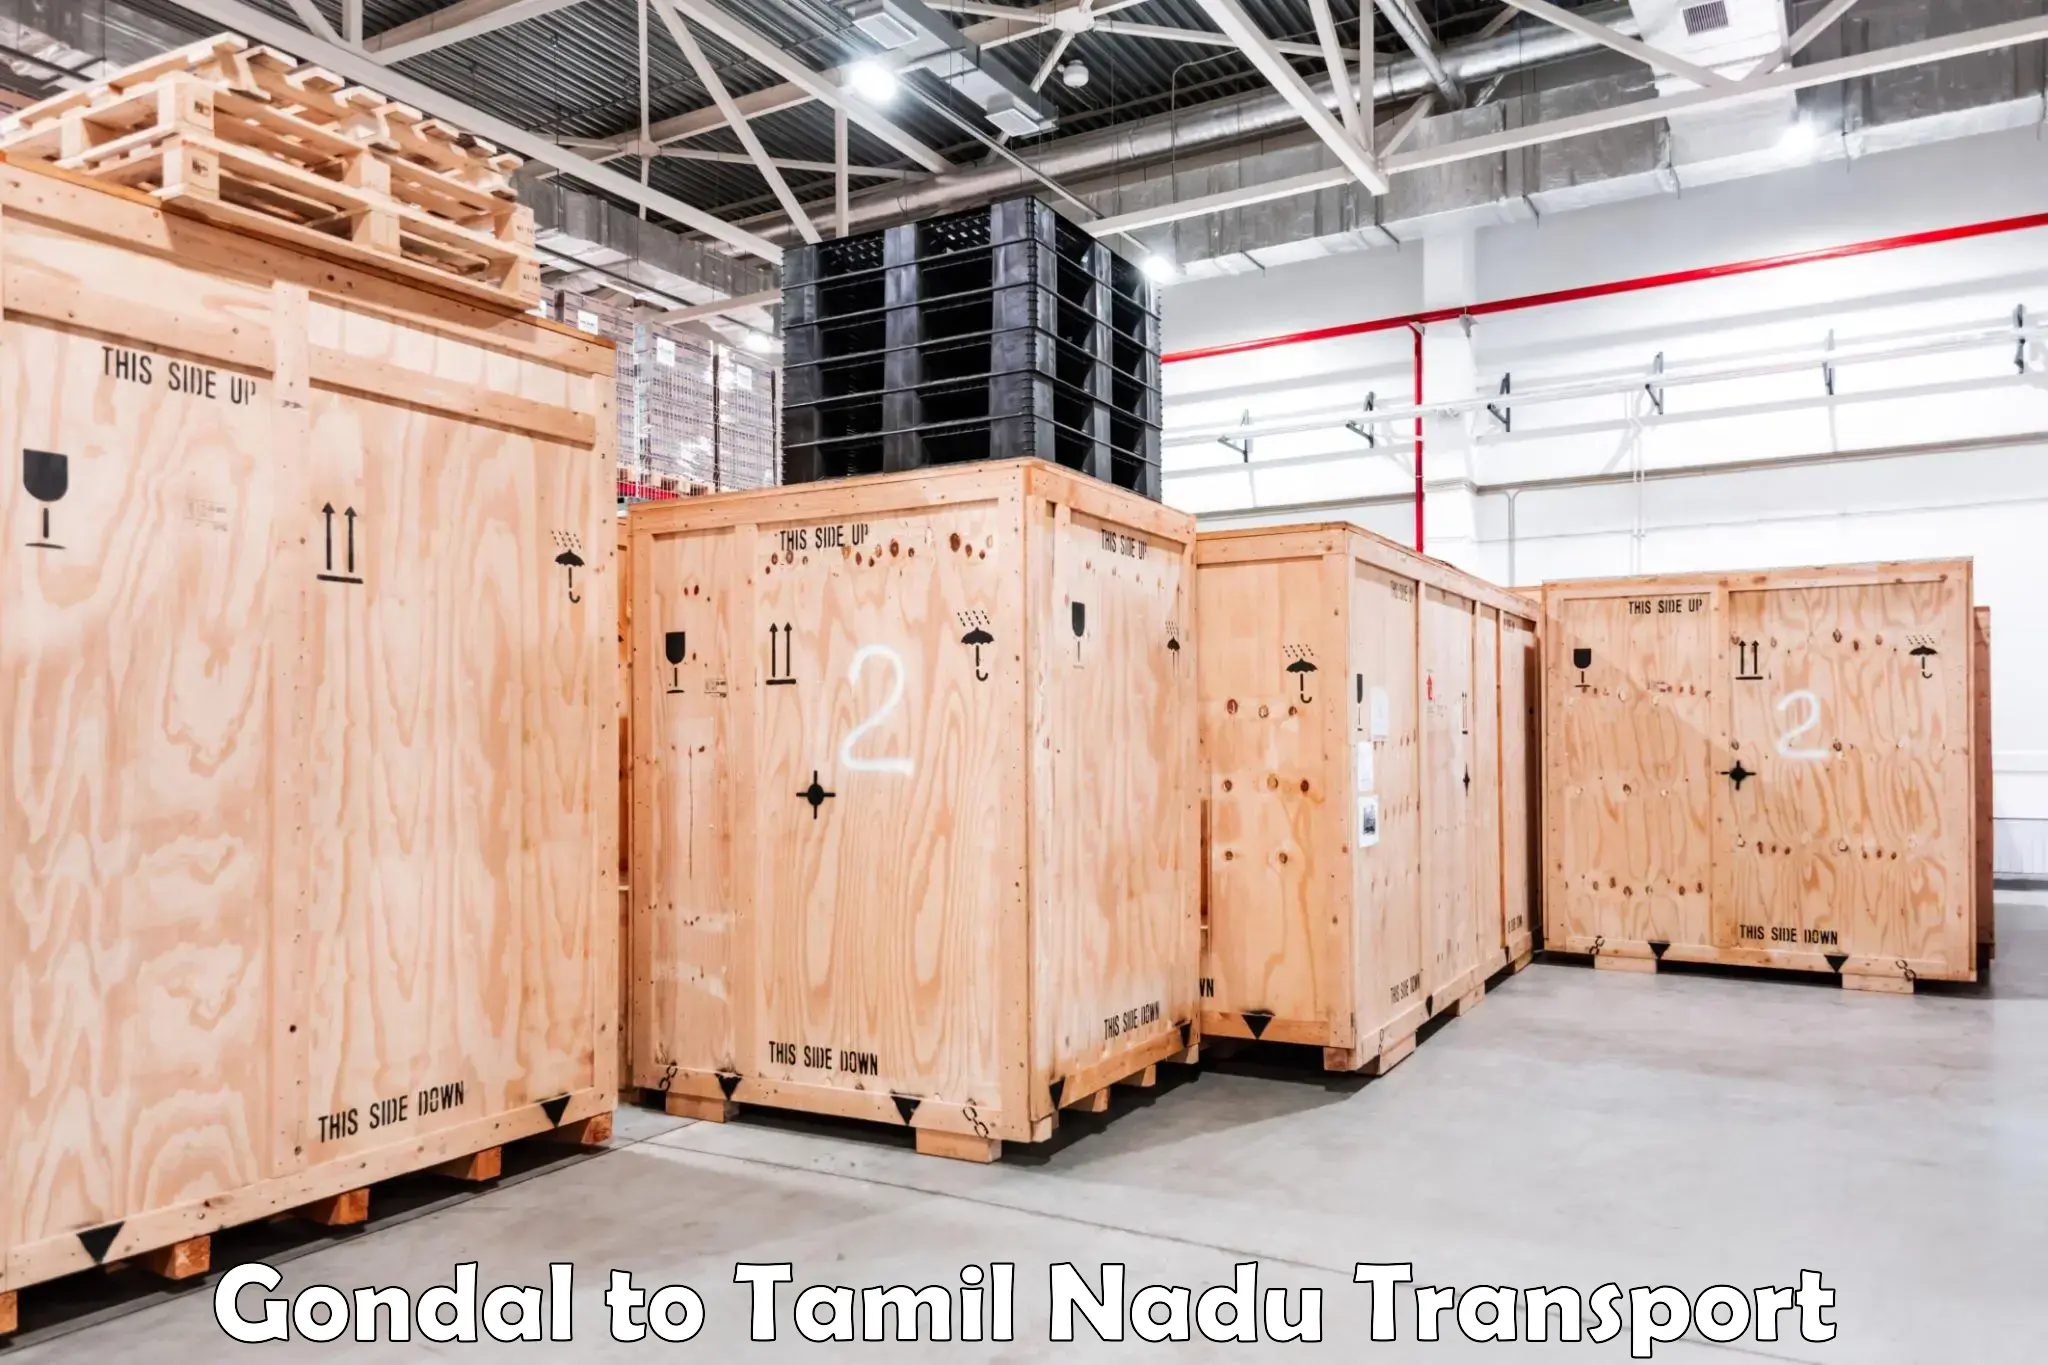 Online transport service Gondal to Tamil Nadu